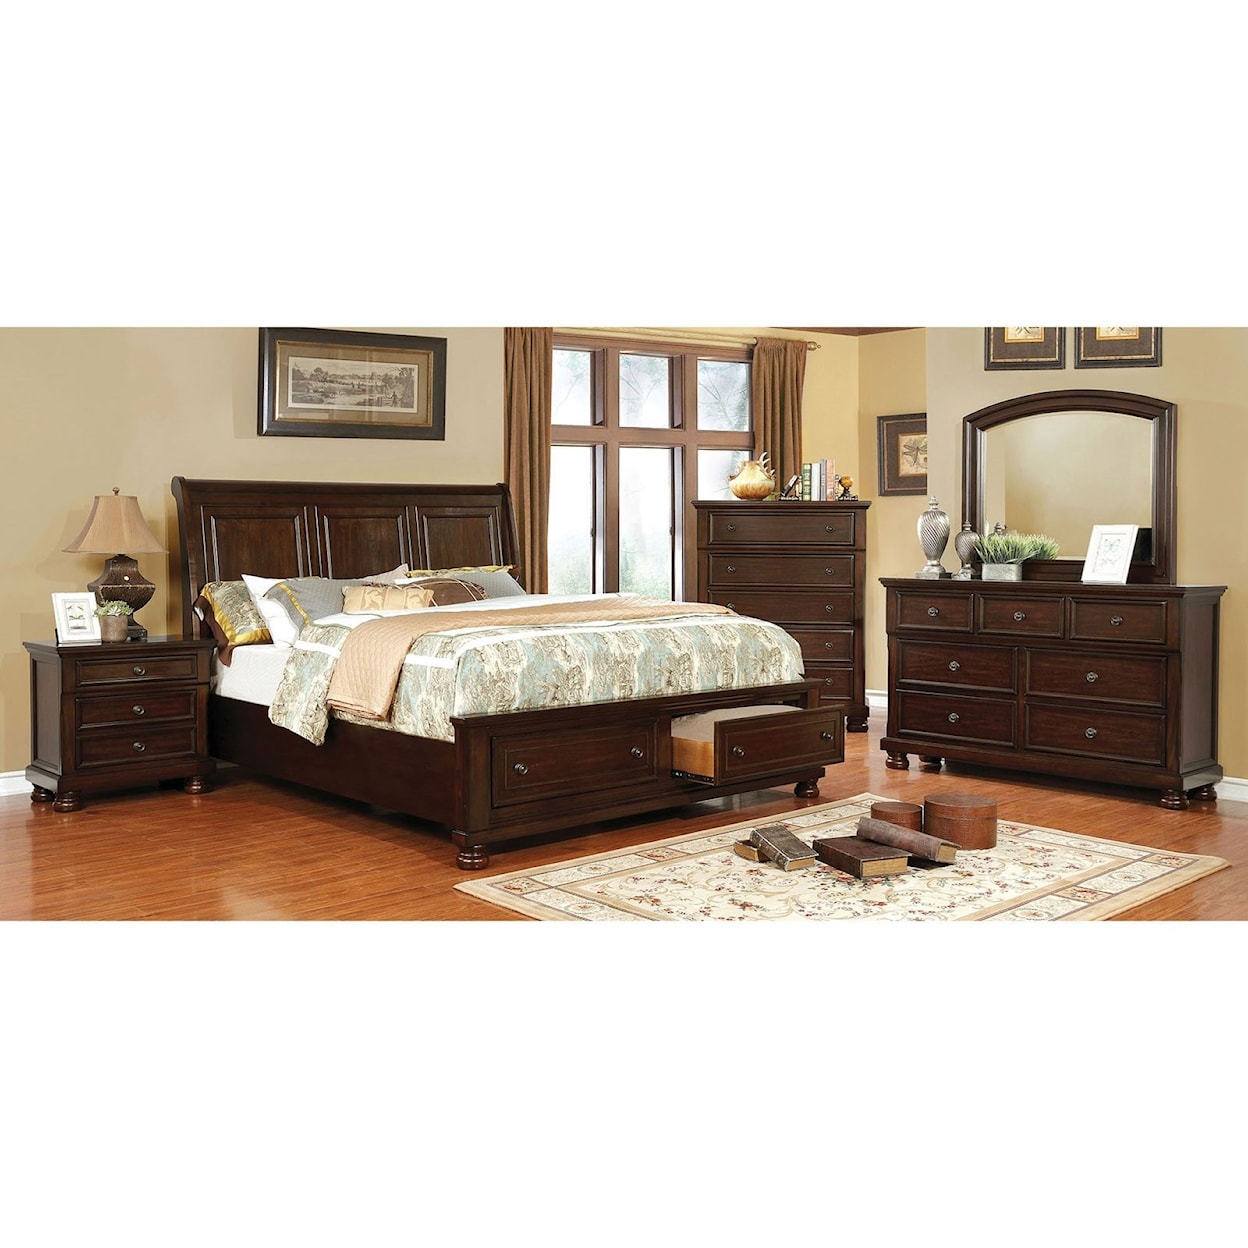 Furniture of America Castor Queen Bedroom Group